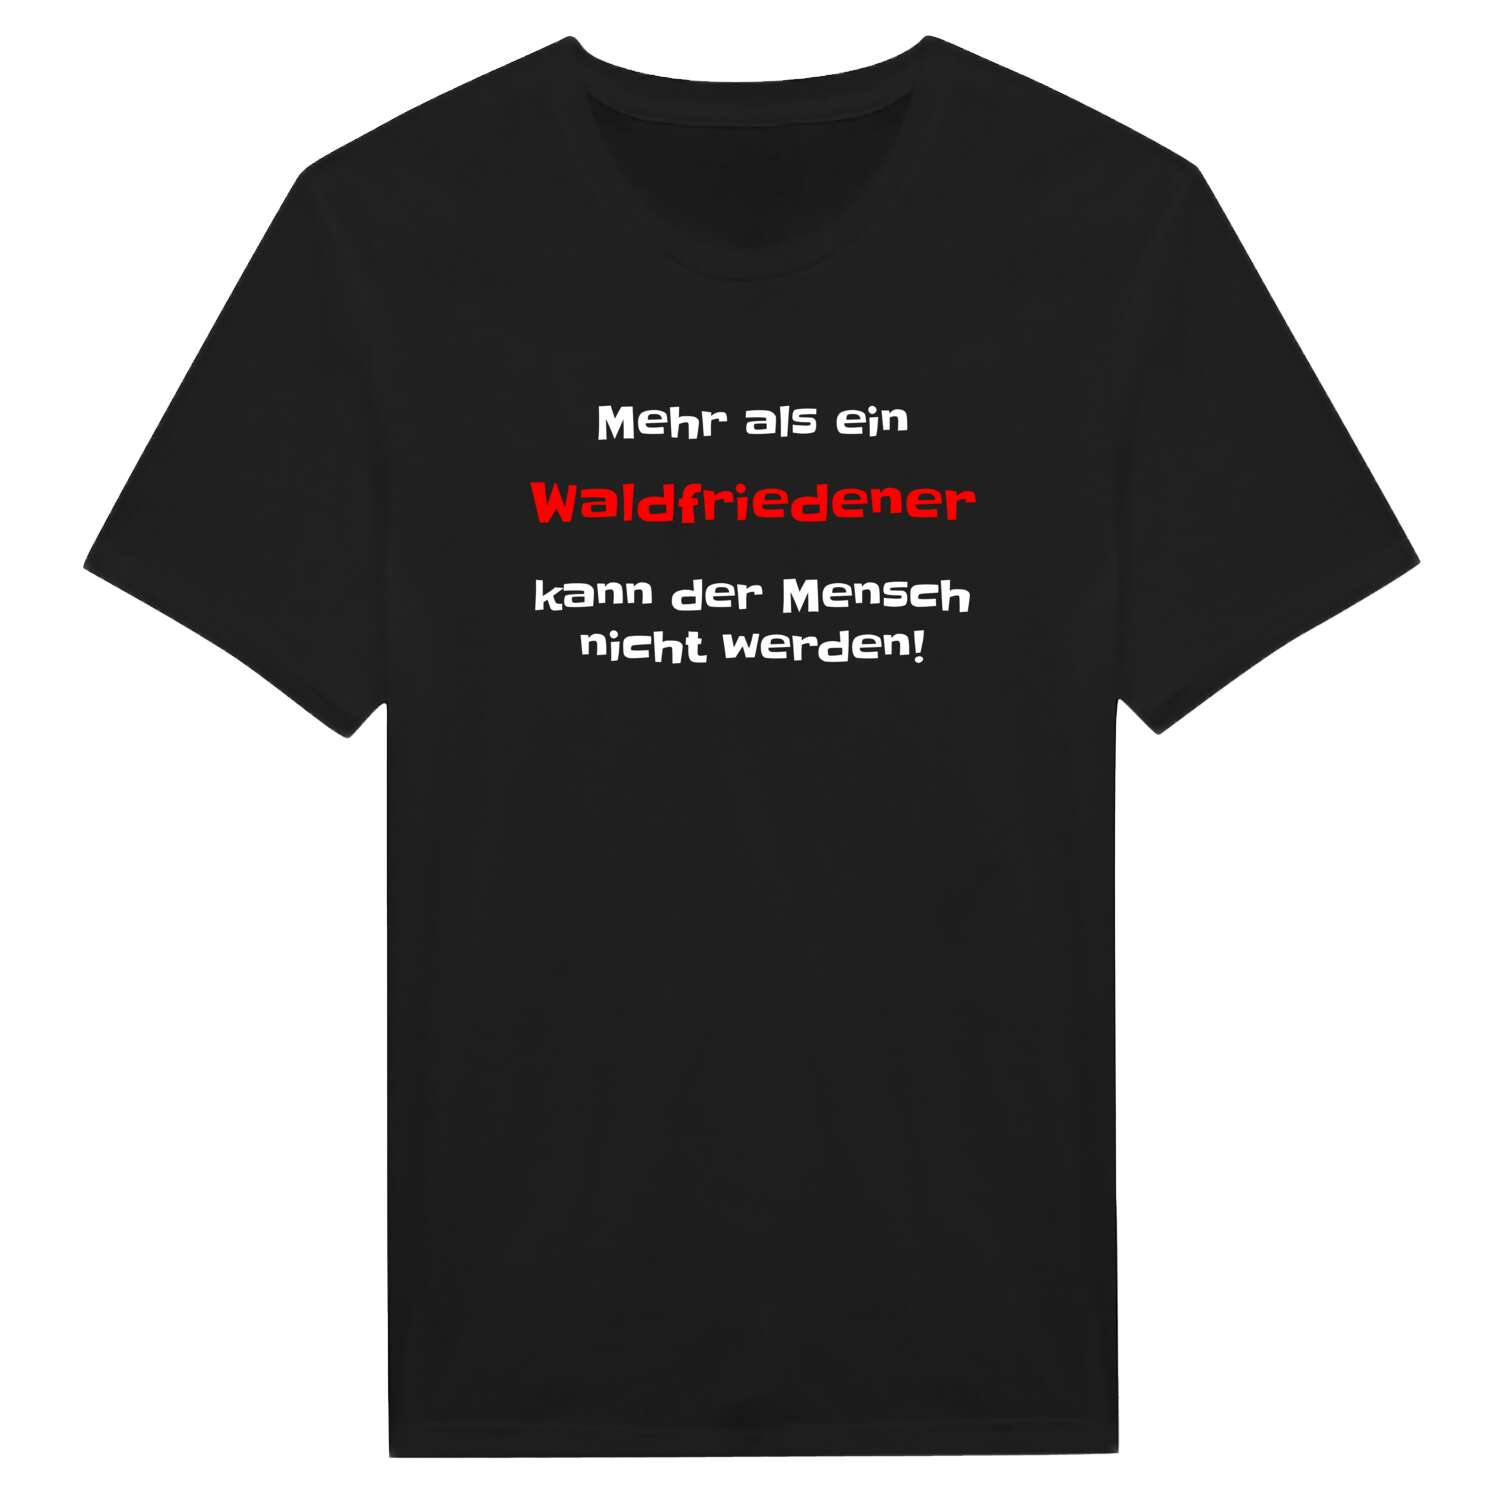 Waldfrieden T-Shirt »Mehr als ein«